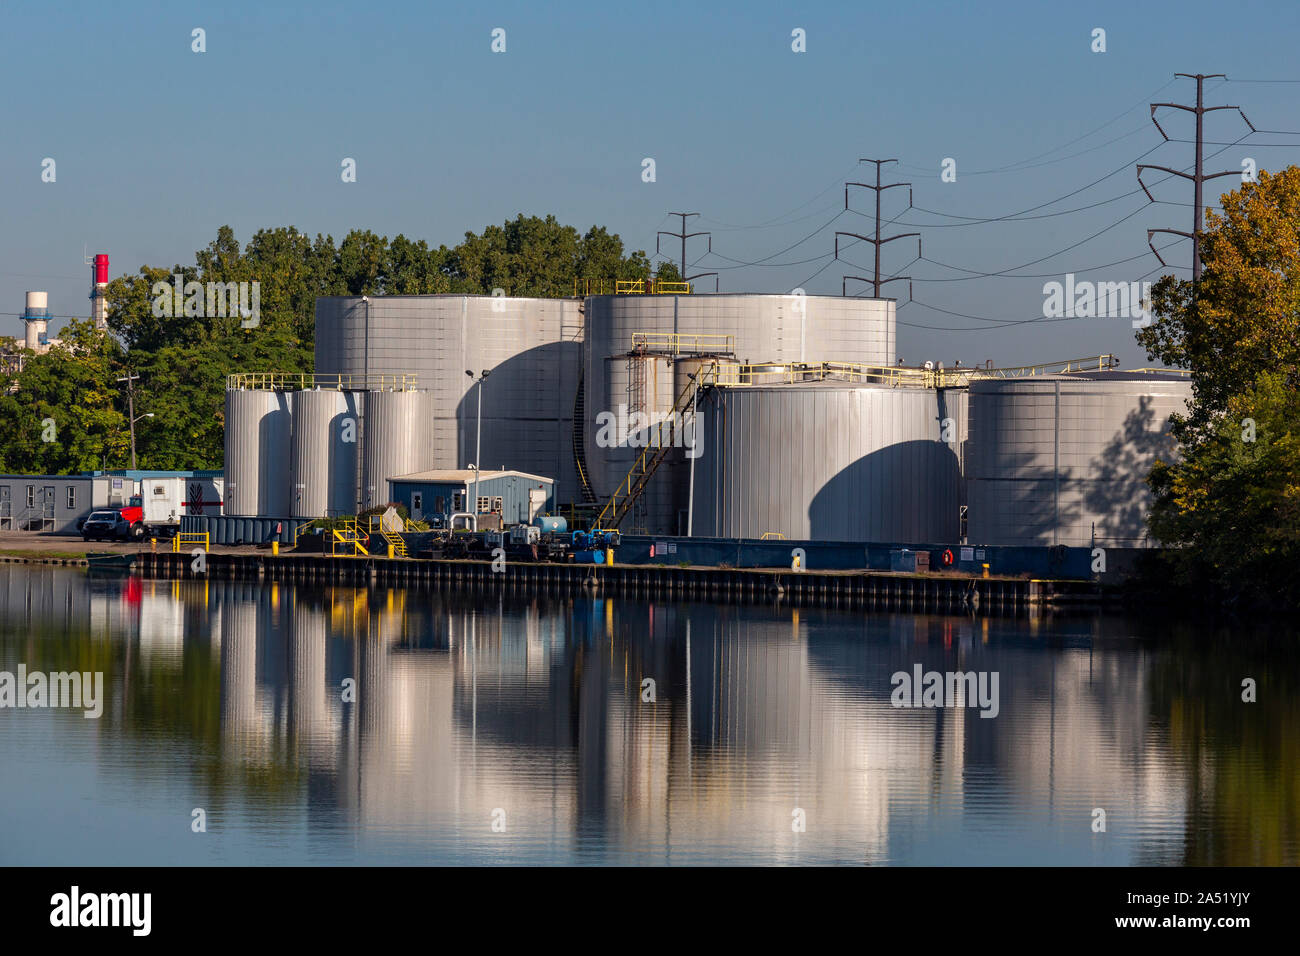 Dearborn, Michigan - marino de los tanques de almacenamiento de combustible a lo largo del río Rouge en la costanera de la empresa Terminal de petróleo. Foto de stock